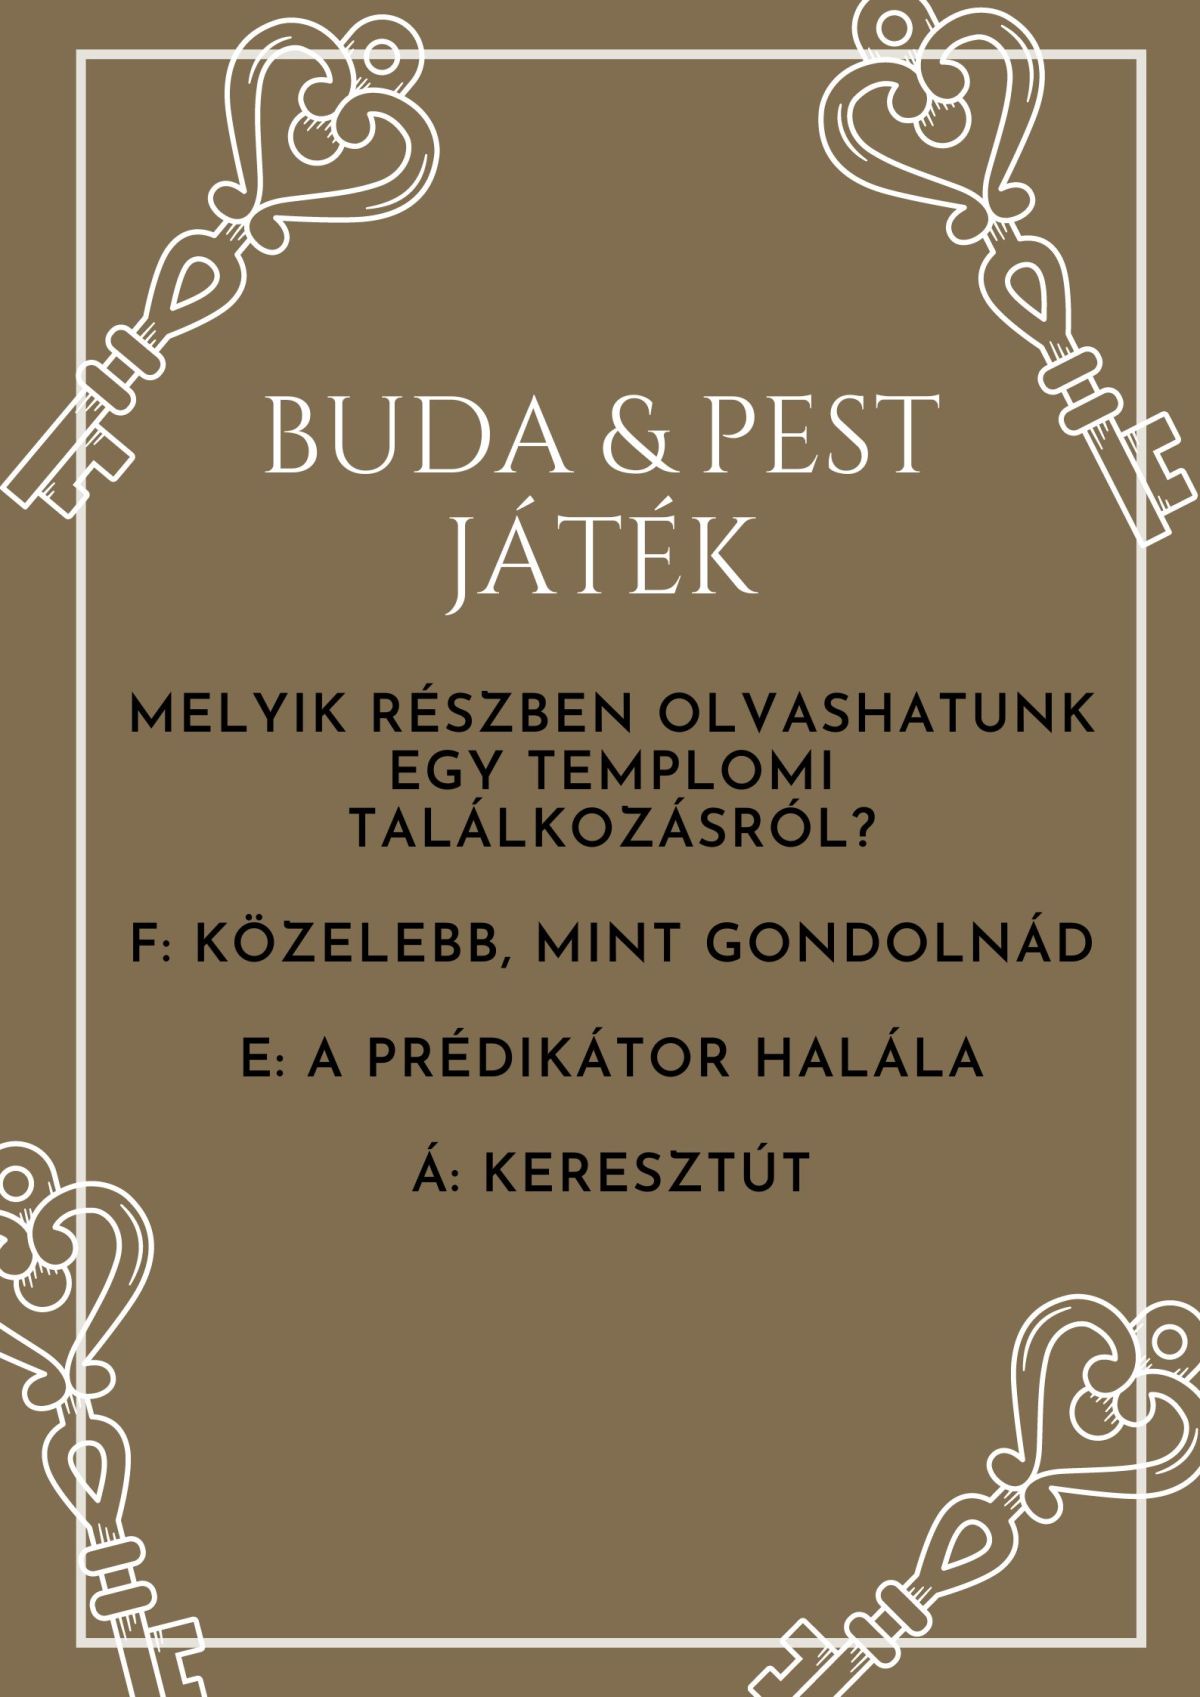 Buda & Pest játék – 16. kérdés